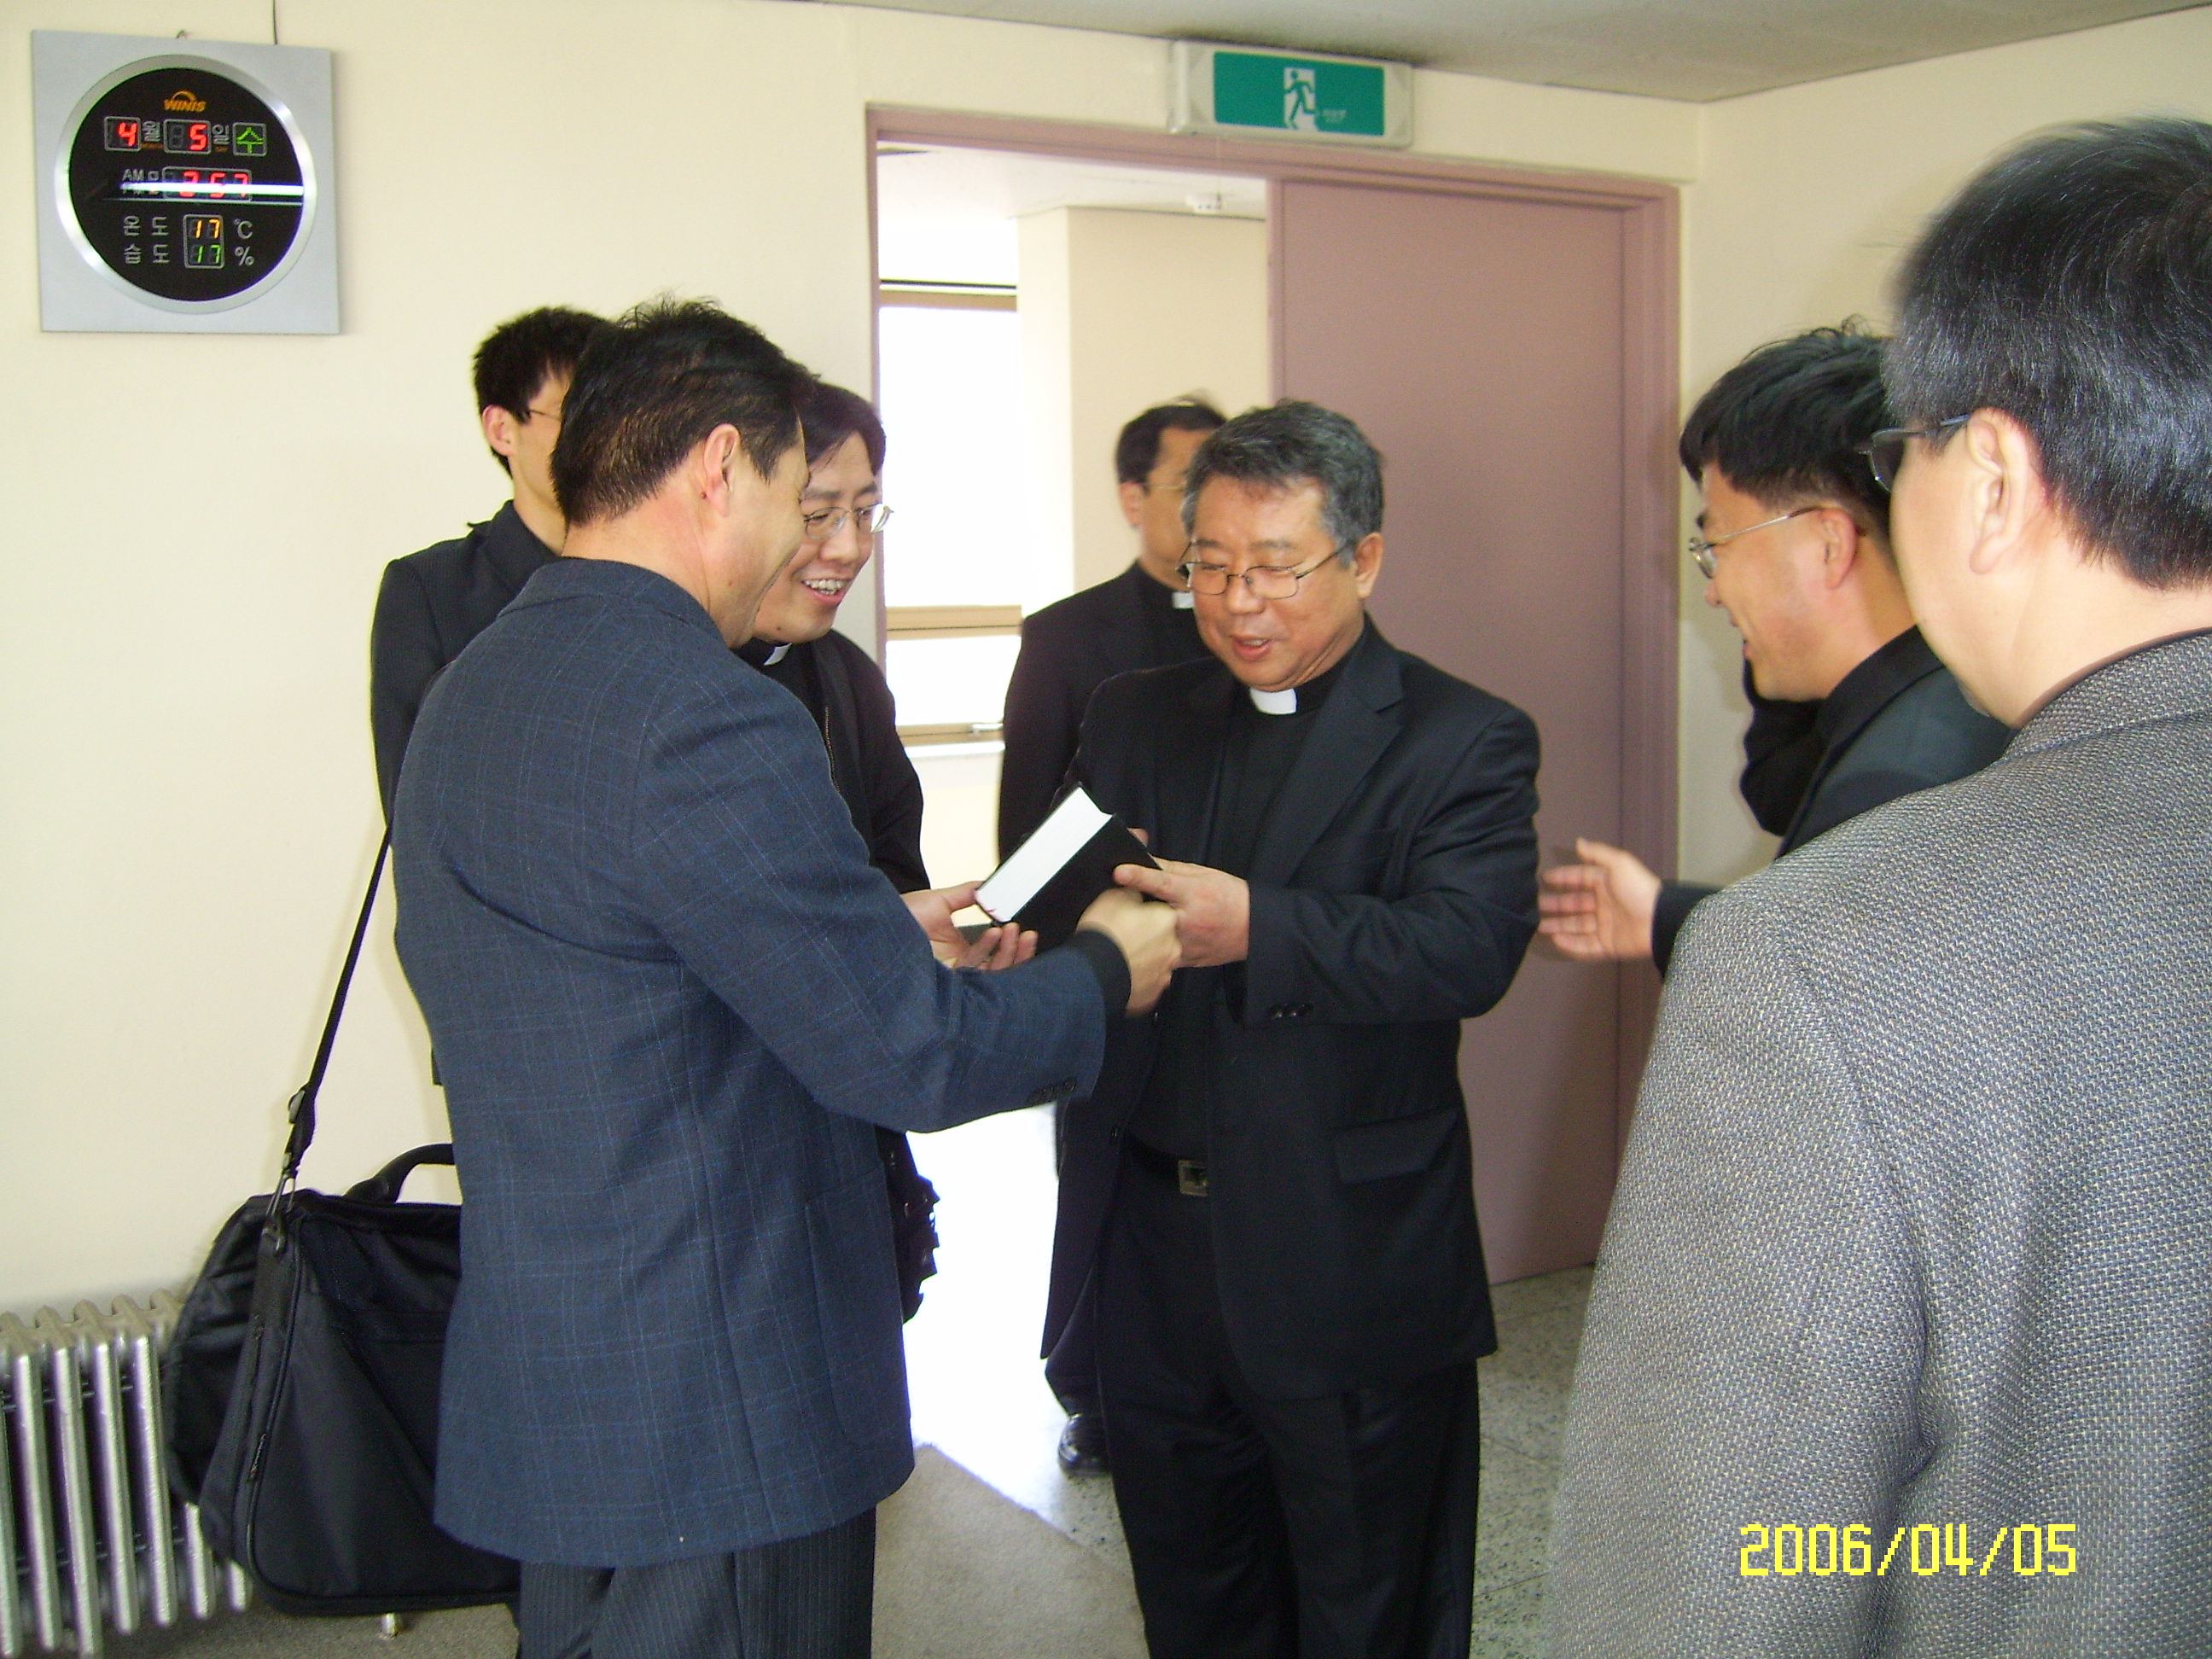 중국 태원교구 산서성 신학교 부원장 신부와 신학생 3명 방문(2006.4.5)의 관련된 이미지 입니다.